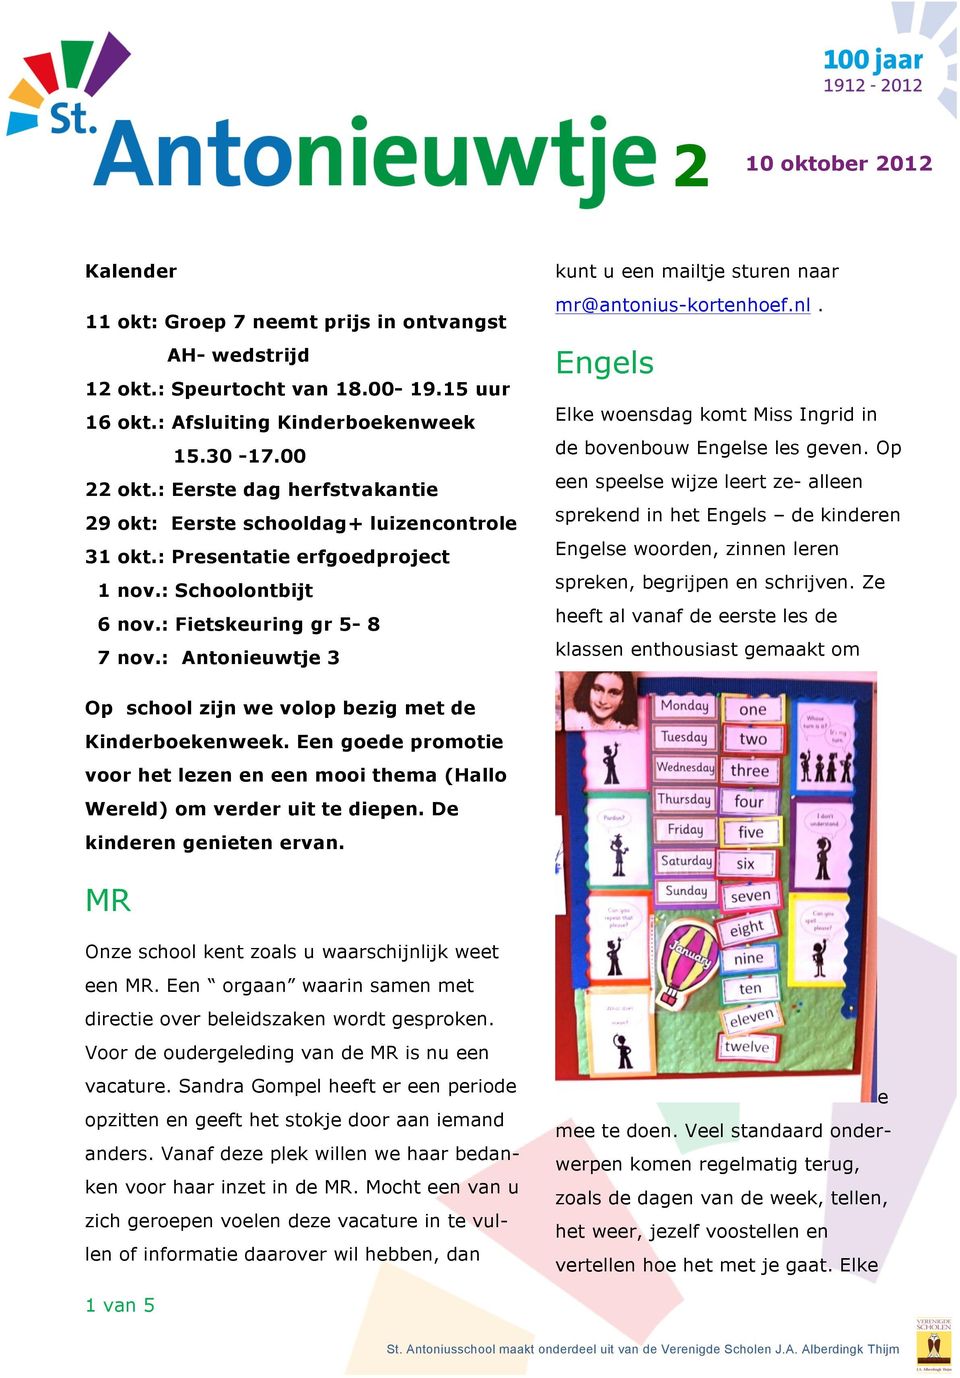 : Antonieuwtje 3 kunt u een mailtje sturen naar mr@antonius-kortenhoef.nl. Engels Elke woensdag komt Miss Ingrid in de bovenbouw Engelse les geven.